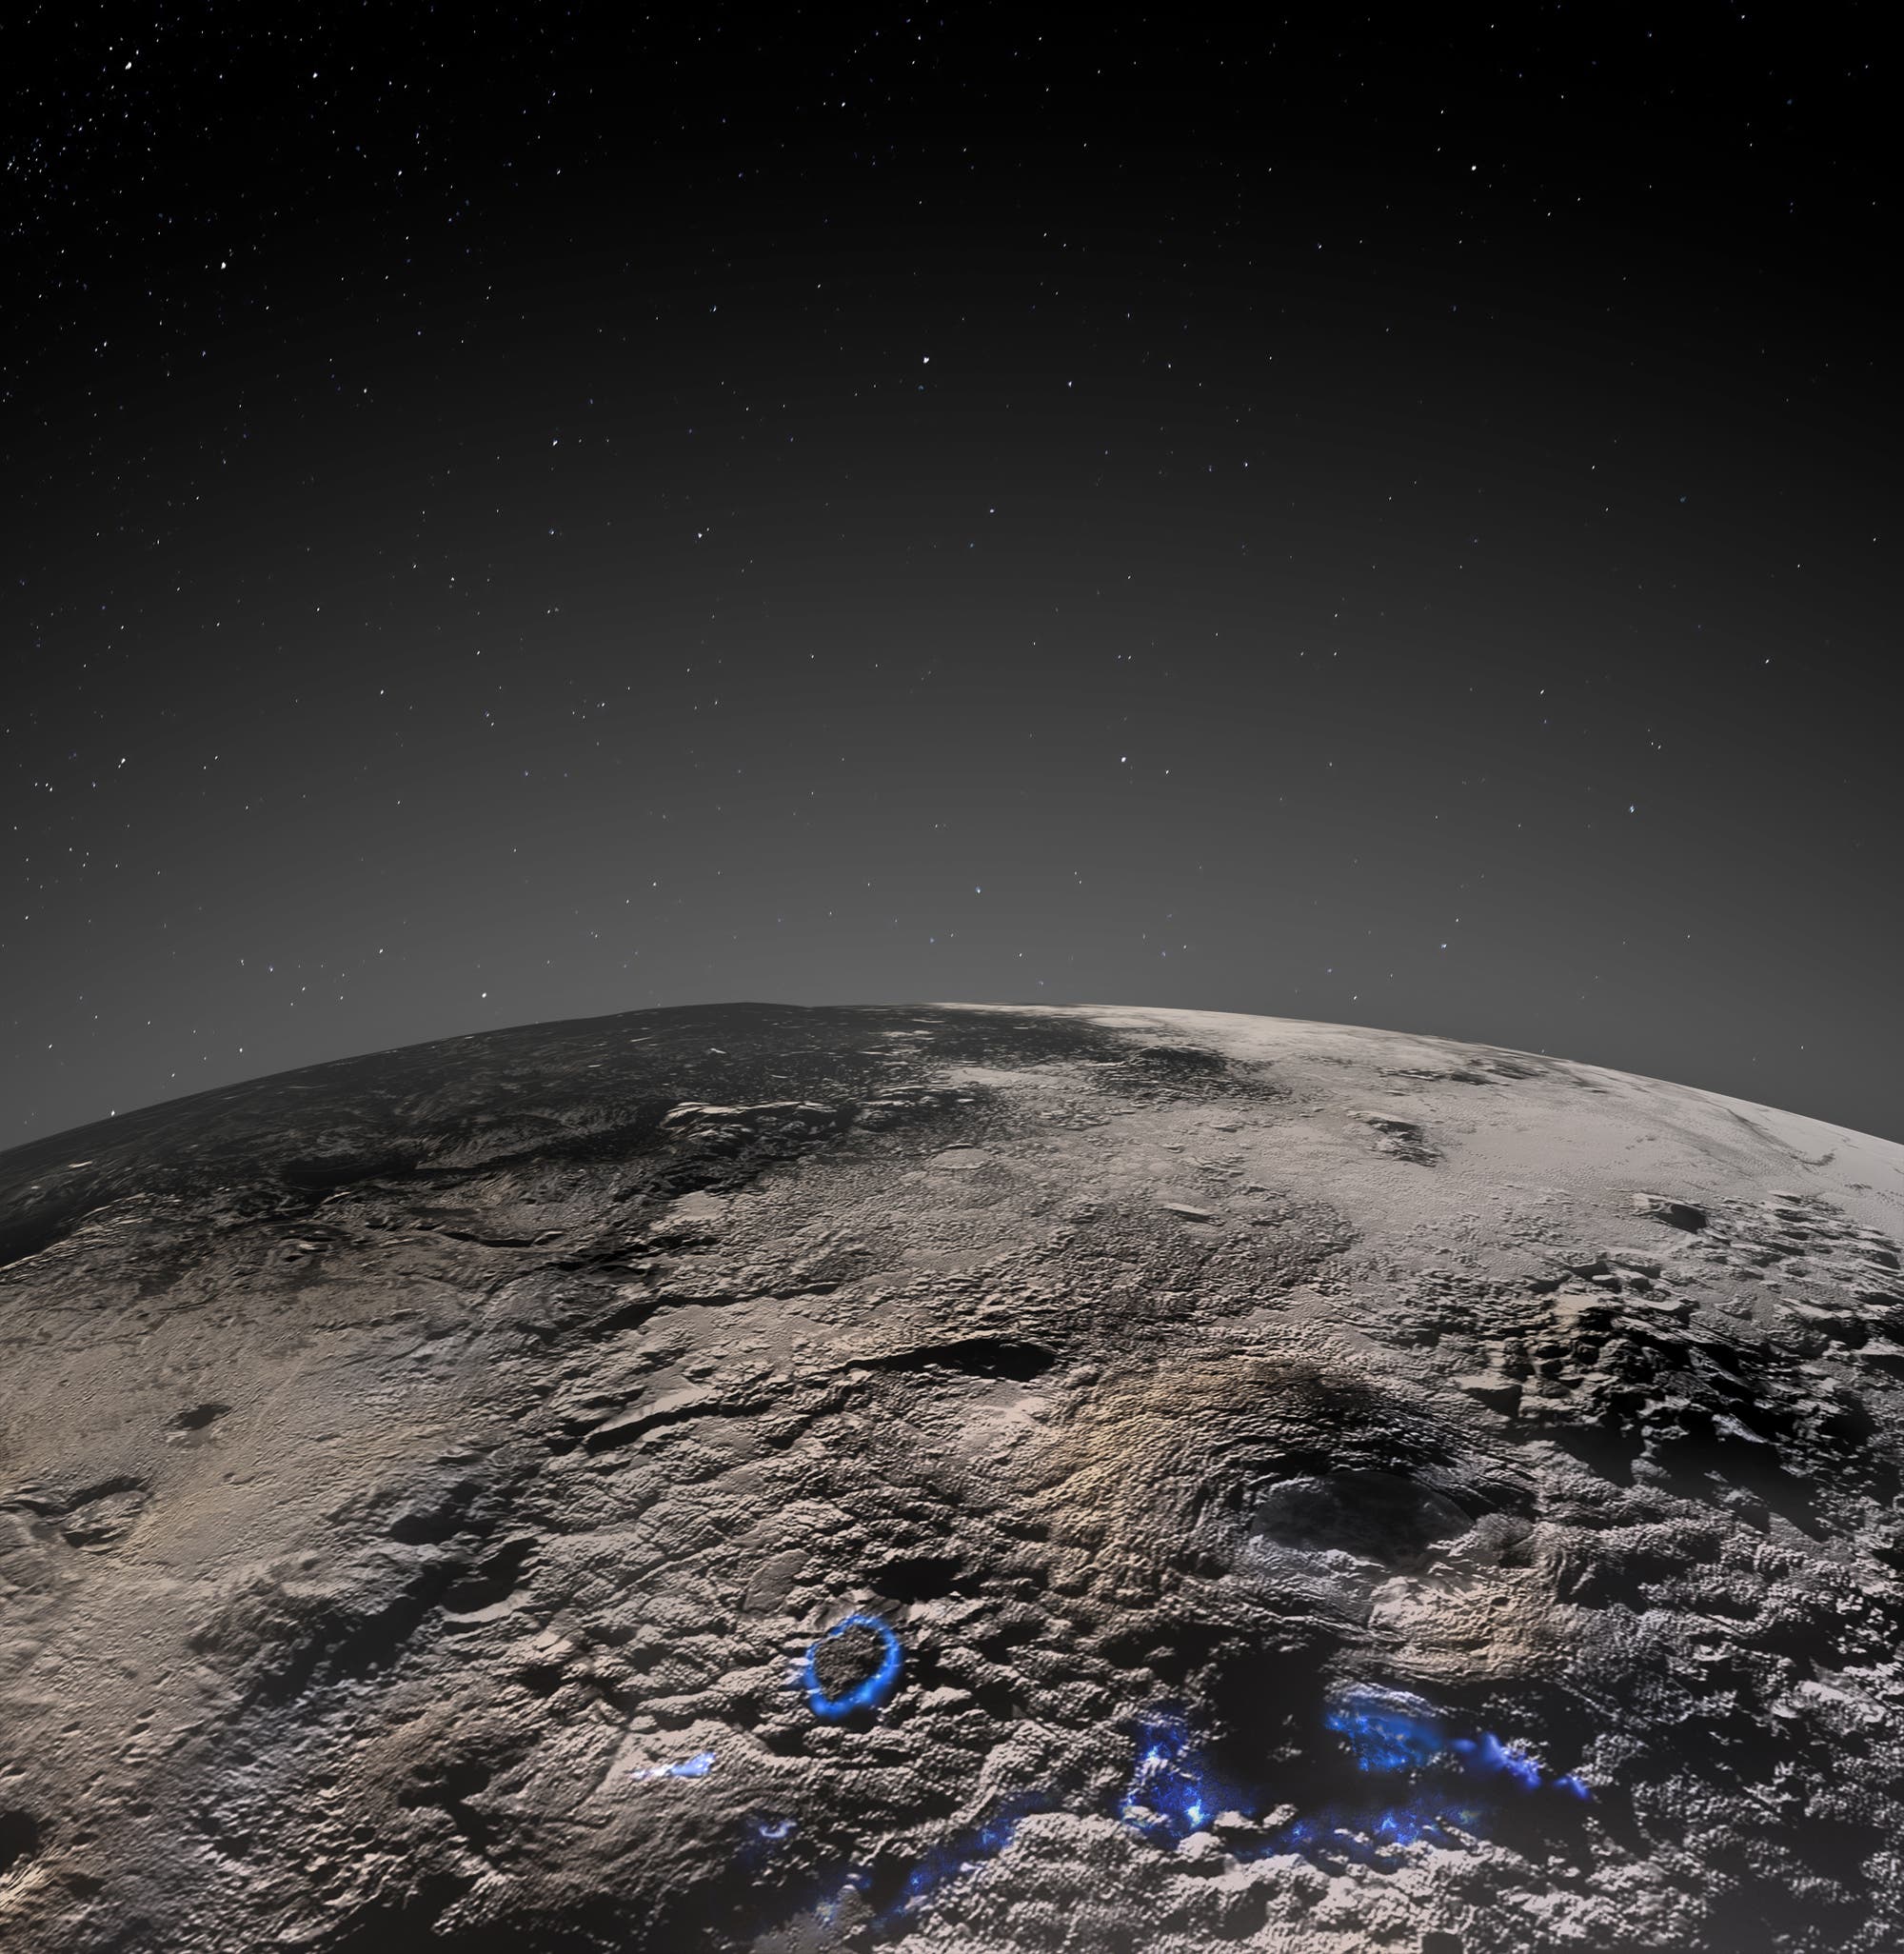 Das ist die Region auf Pluto, die von Kryovulkanismus geprägt worden sein könnte. Die Oberfläche und die dünne Atmosphäre des Pluto sind hier in Graustufen gezeigt. Die Regionen vergangener kryovulkanischer Aktivität sind hier – in einer Illustration – blau eingezeichnet. 